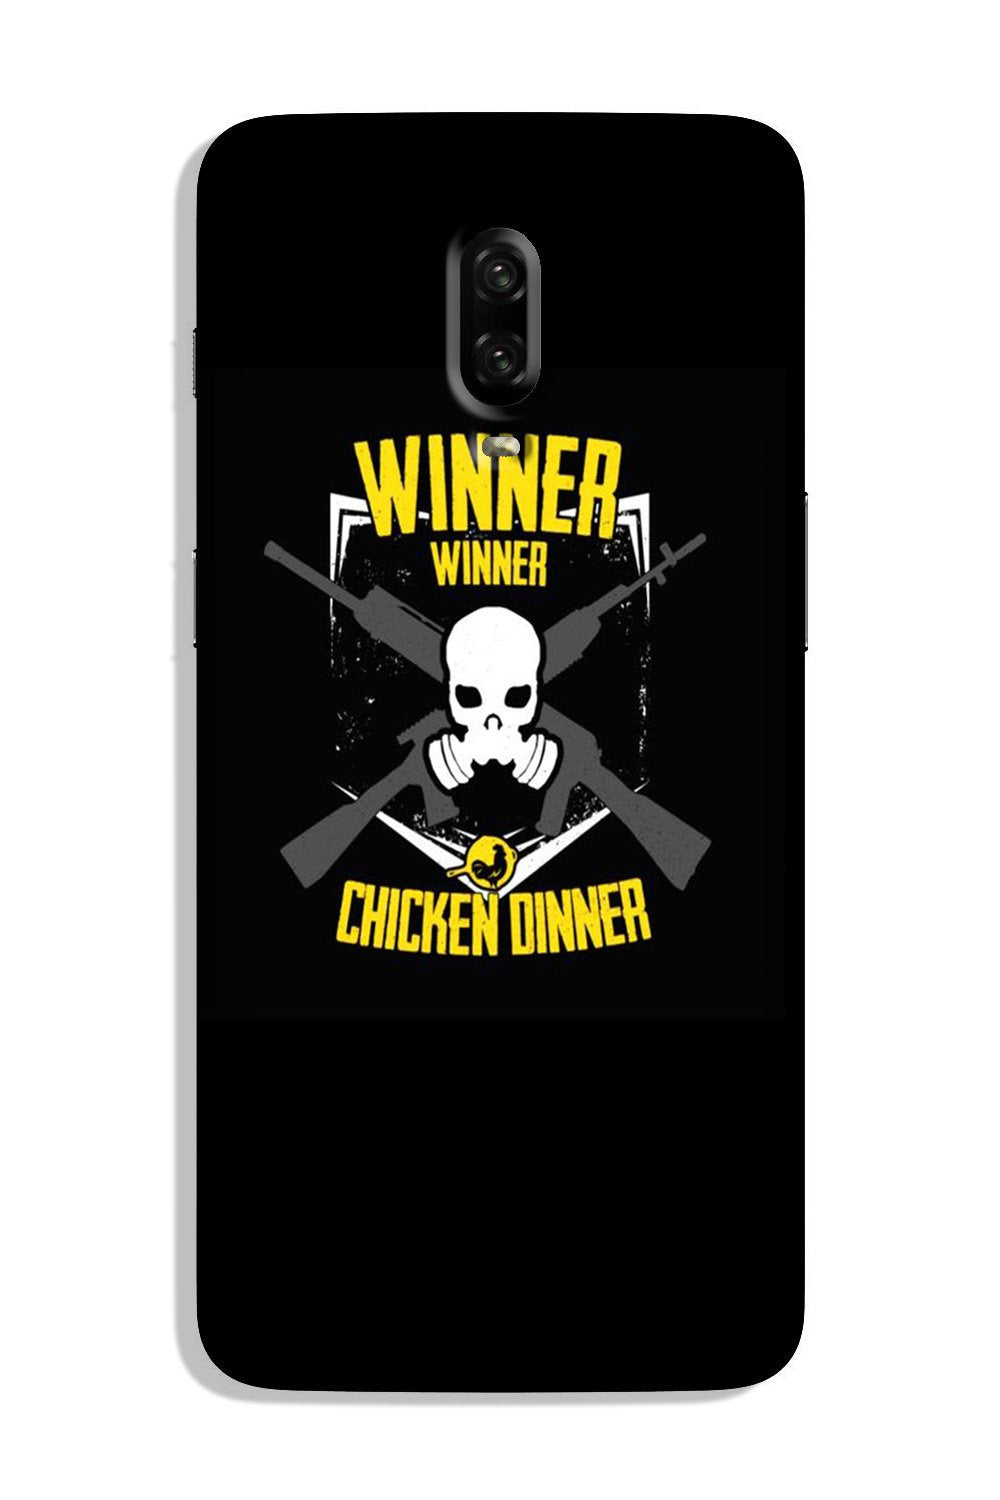 Winner Winner Chicken Dinner Case for OnePlus 7(Design - 178)